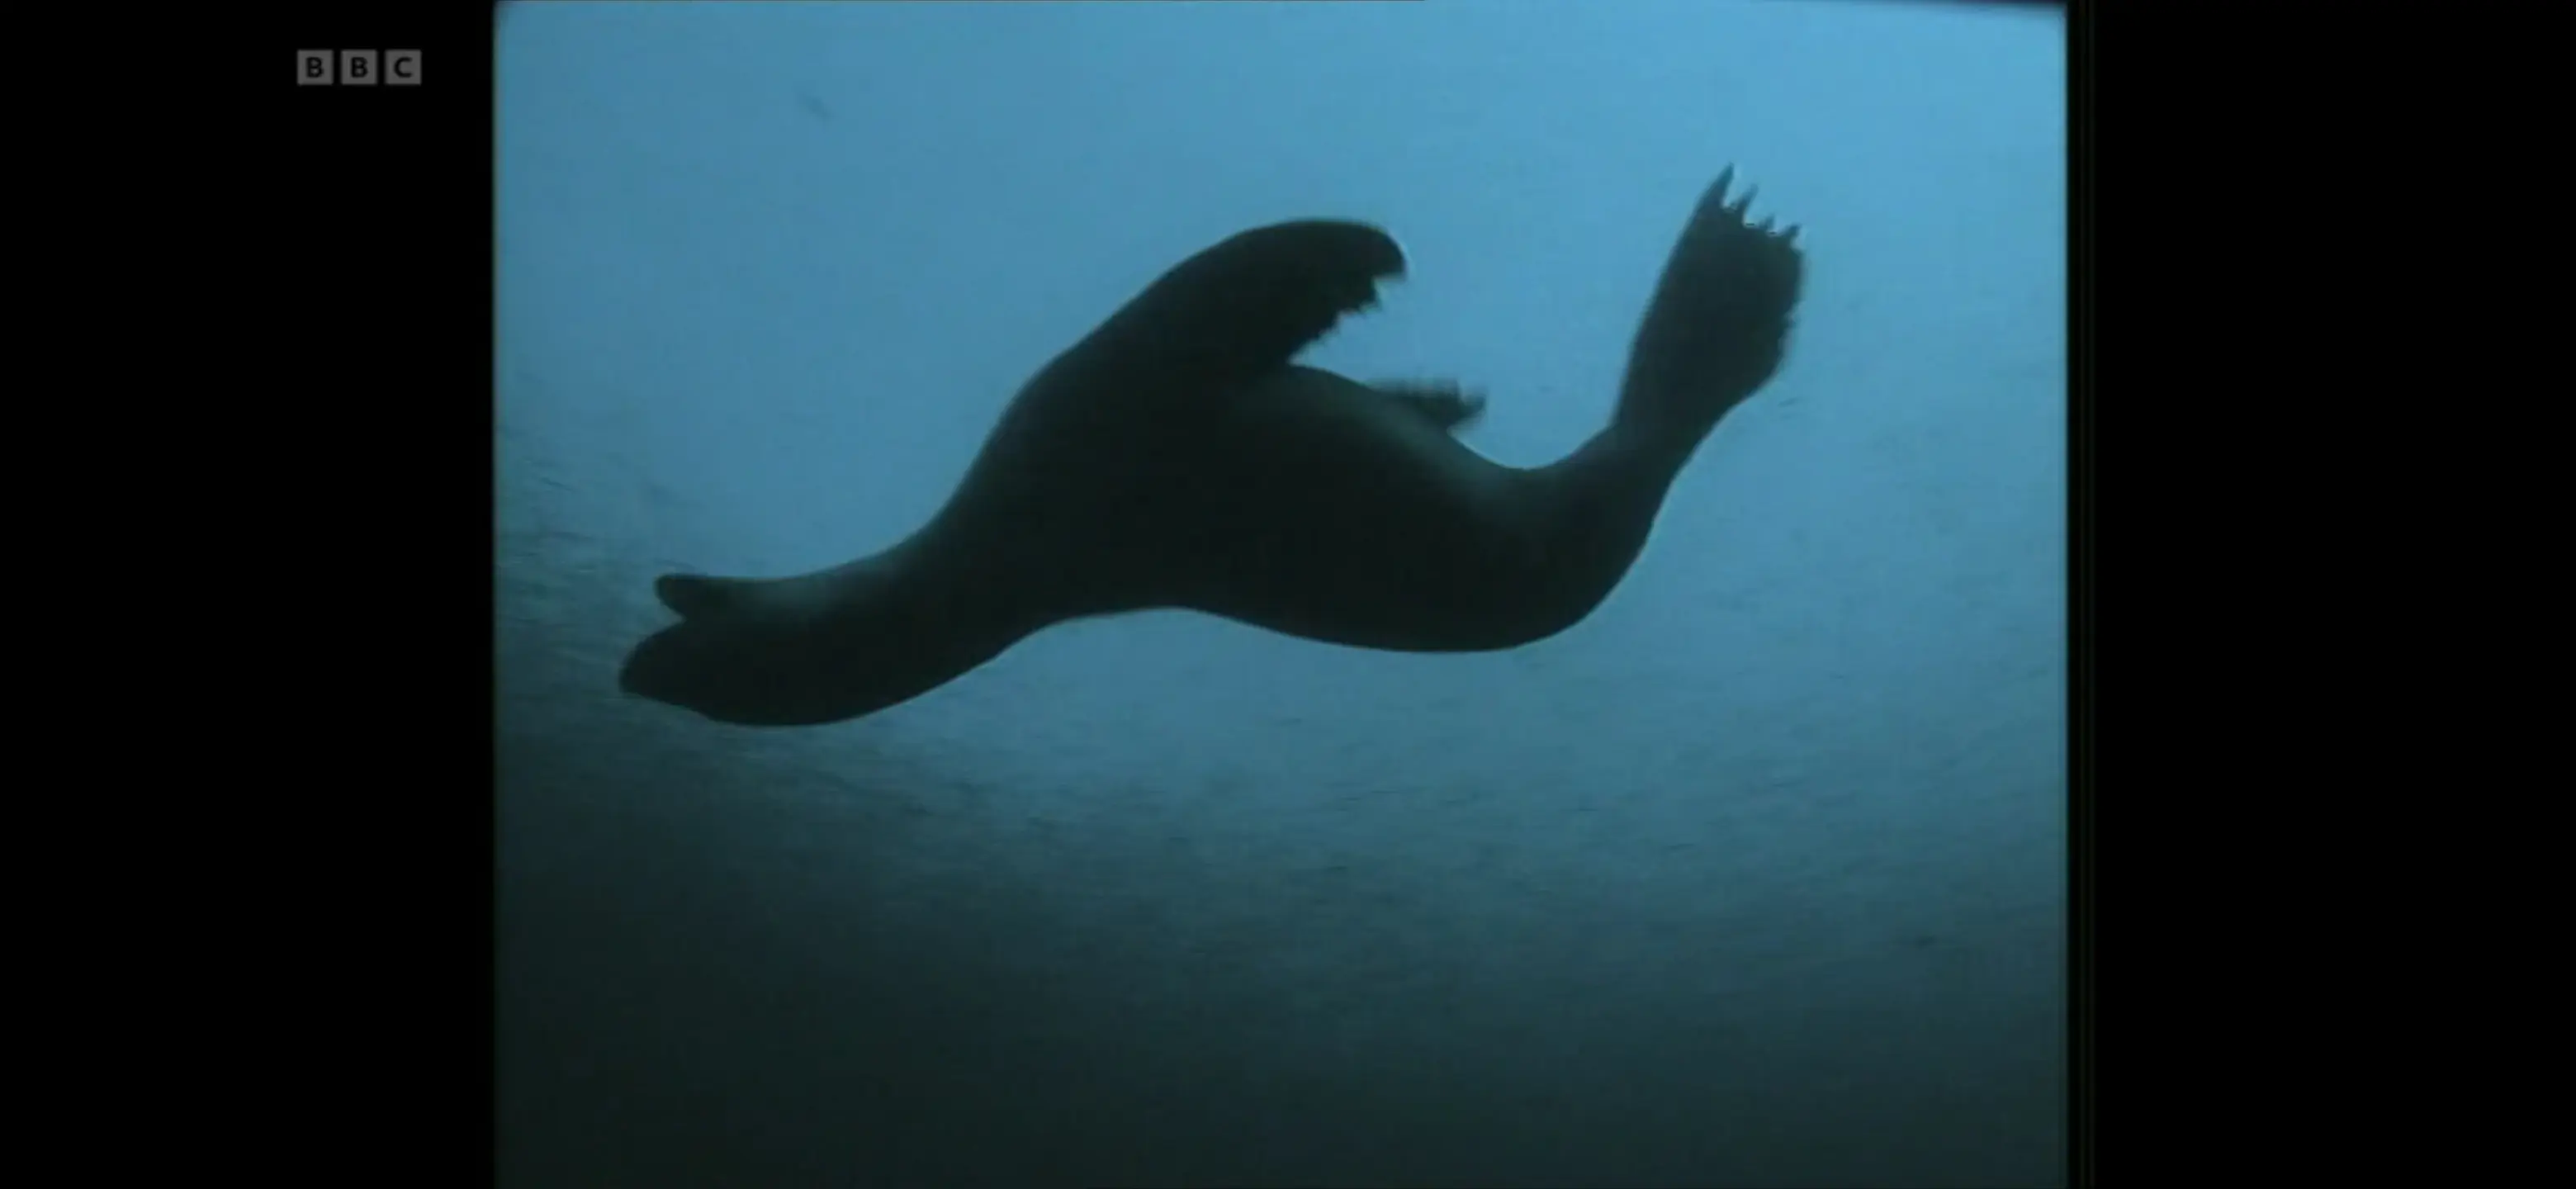 Antarctic fur seal (Arctocephalus gazella) as shown in Life in the Freezer - The Bountiful Sea